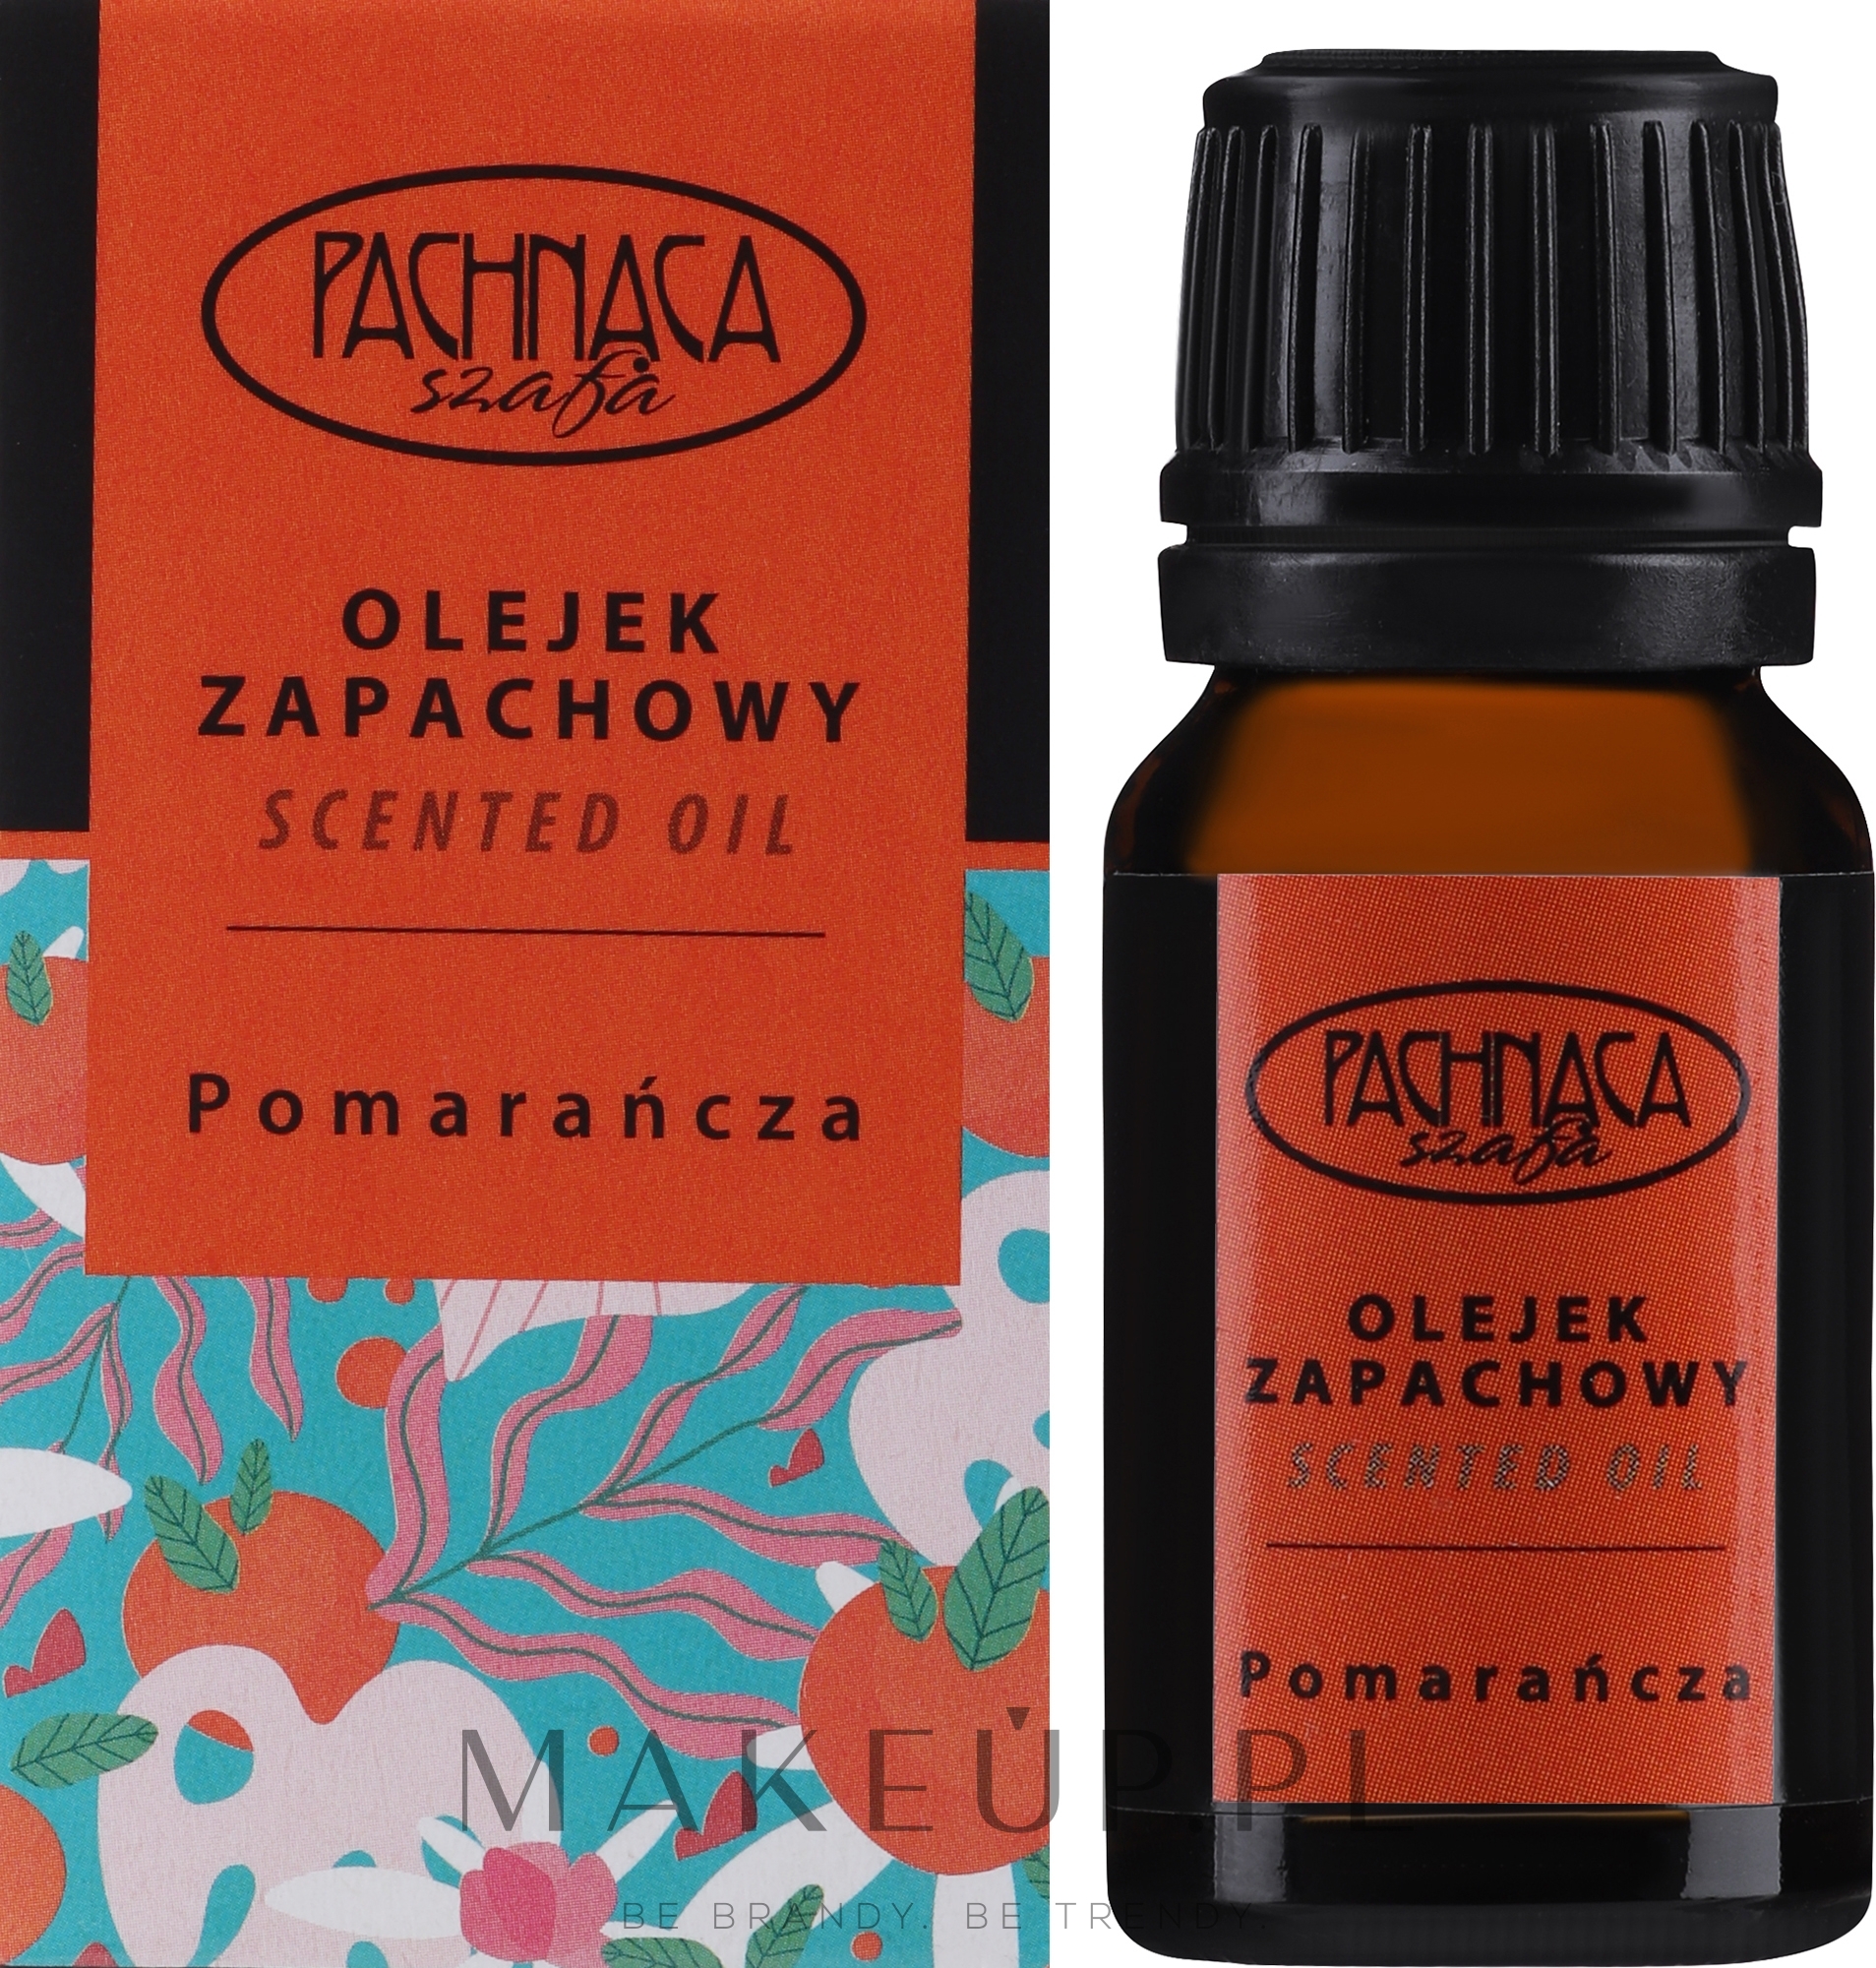 Odświeżający olejek zapachowy Pomarańcza - Pachnaca Szafa Oil — Zdjęcie 10 ml